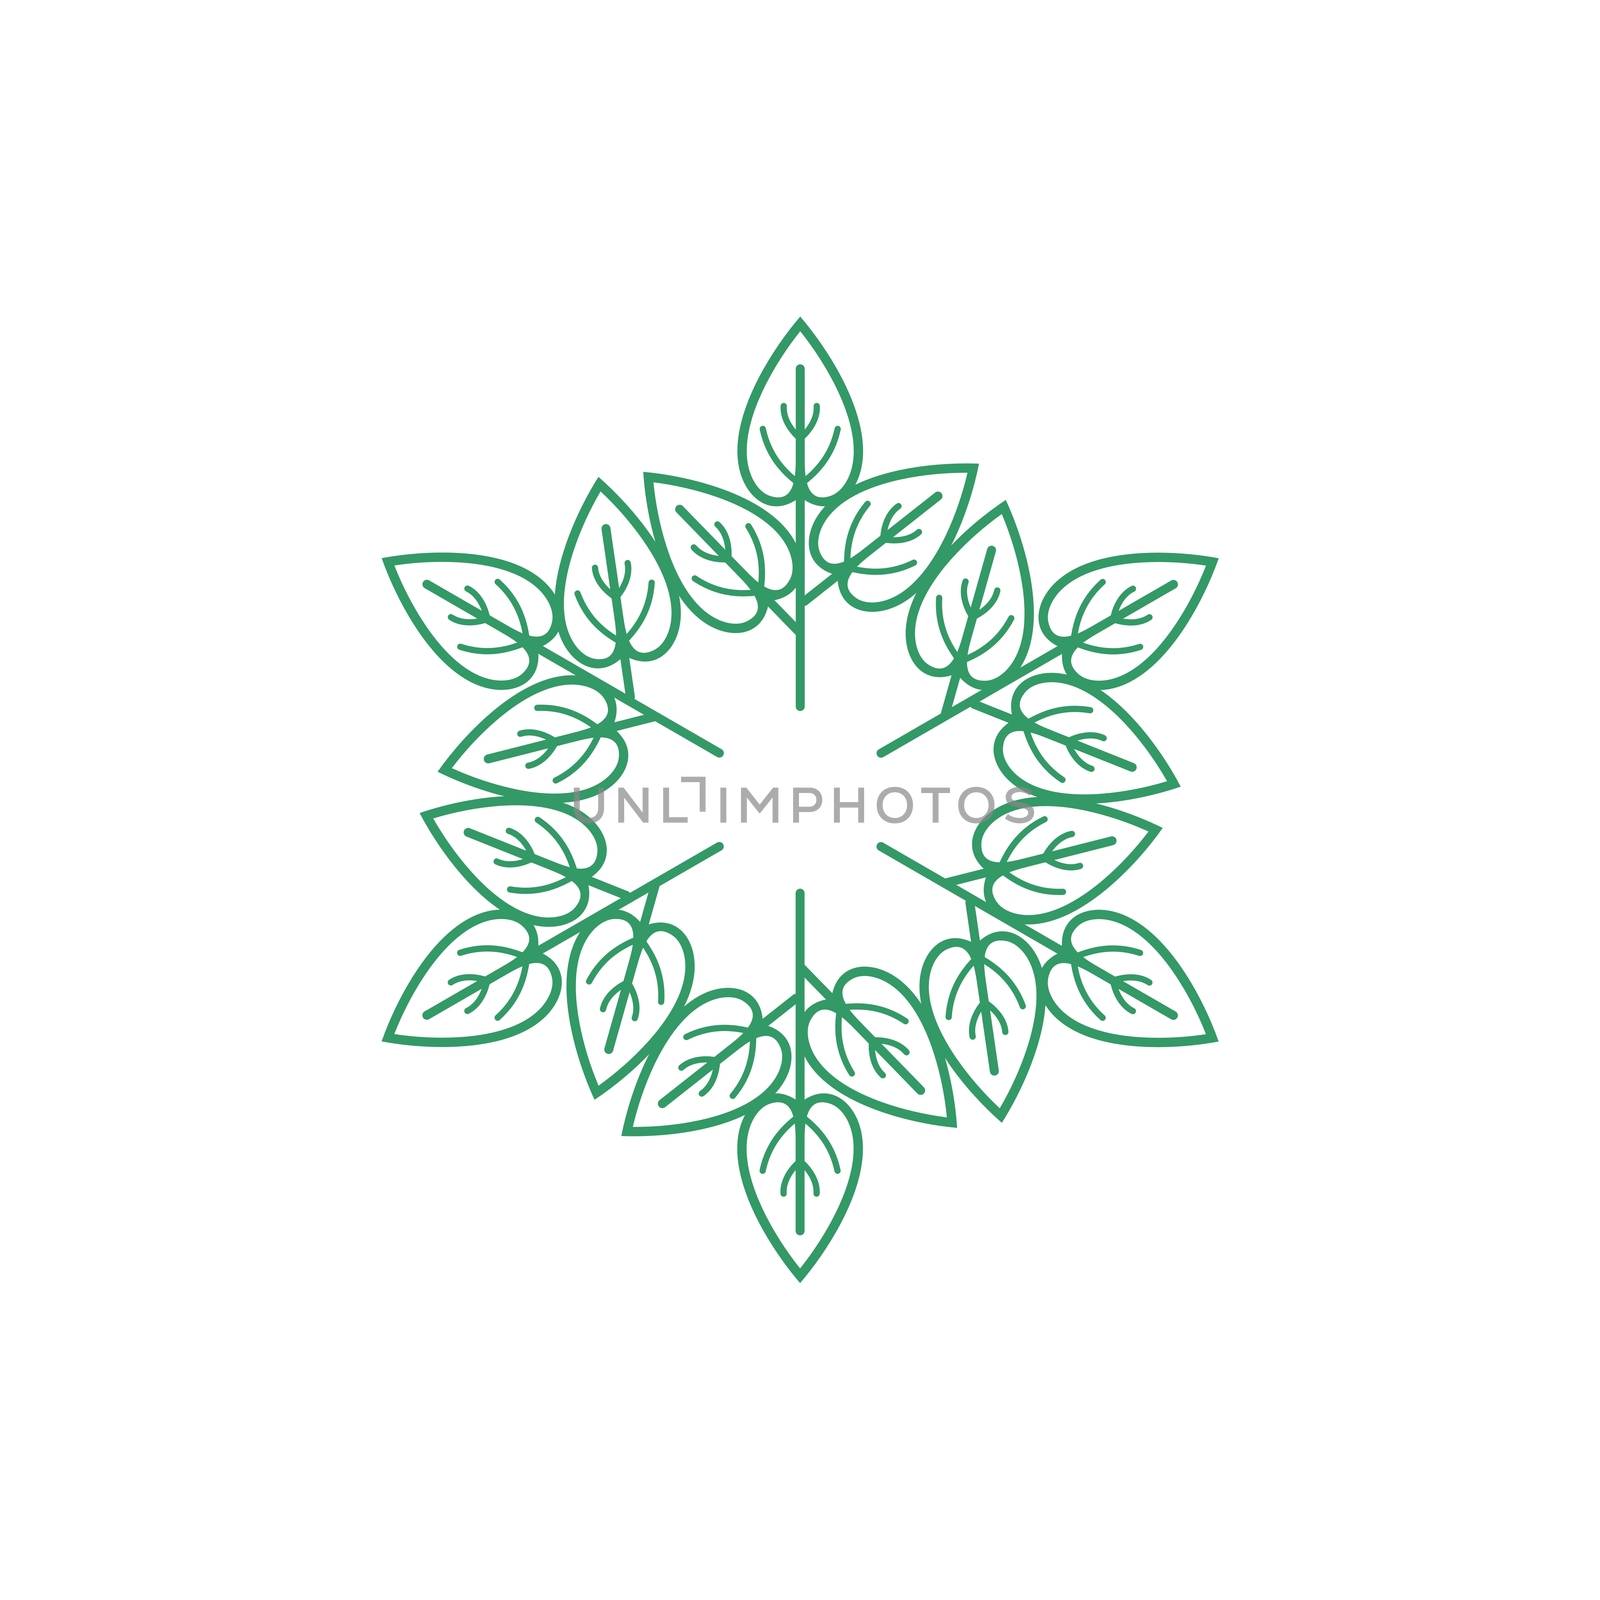 Green Leaves Flower Ornamental Logo Template Illustration Design. Vector EPS 10.